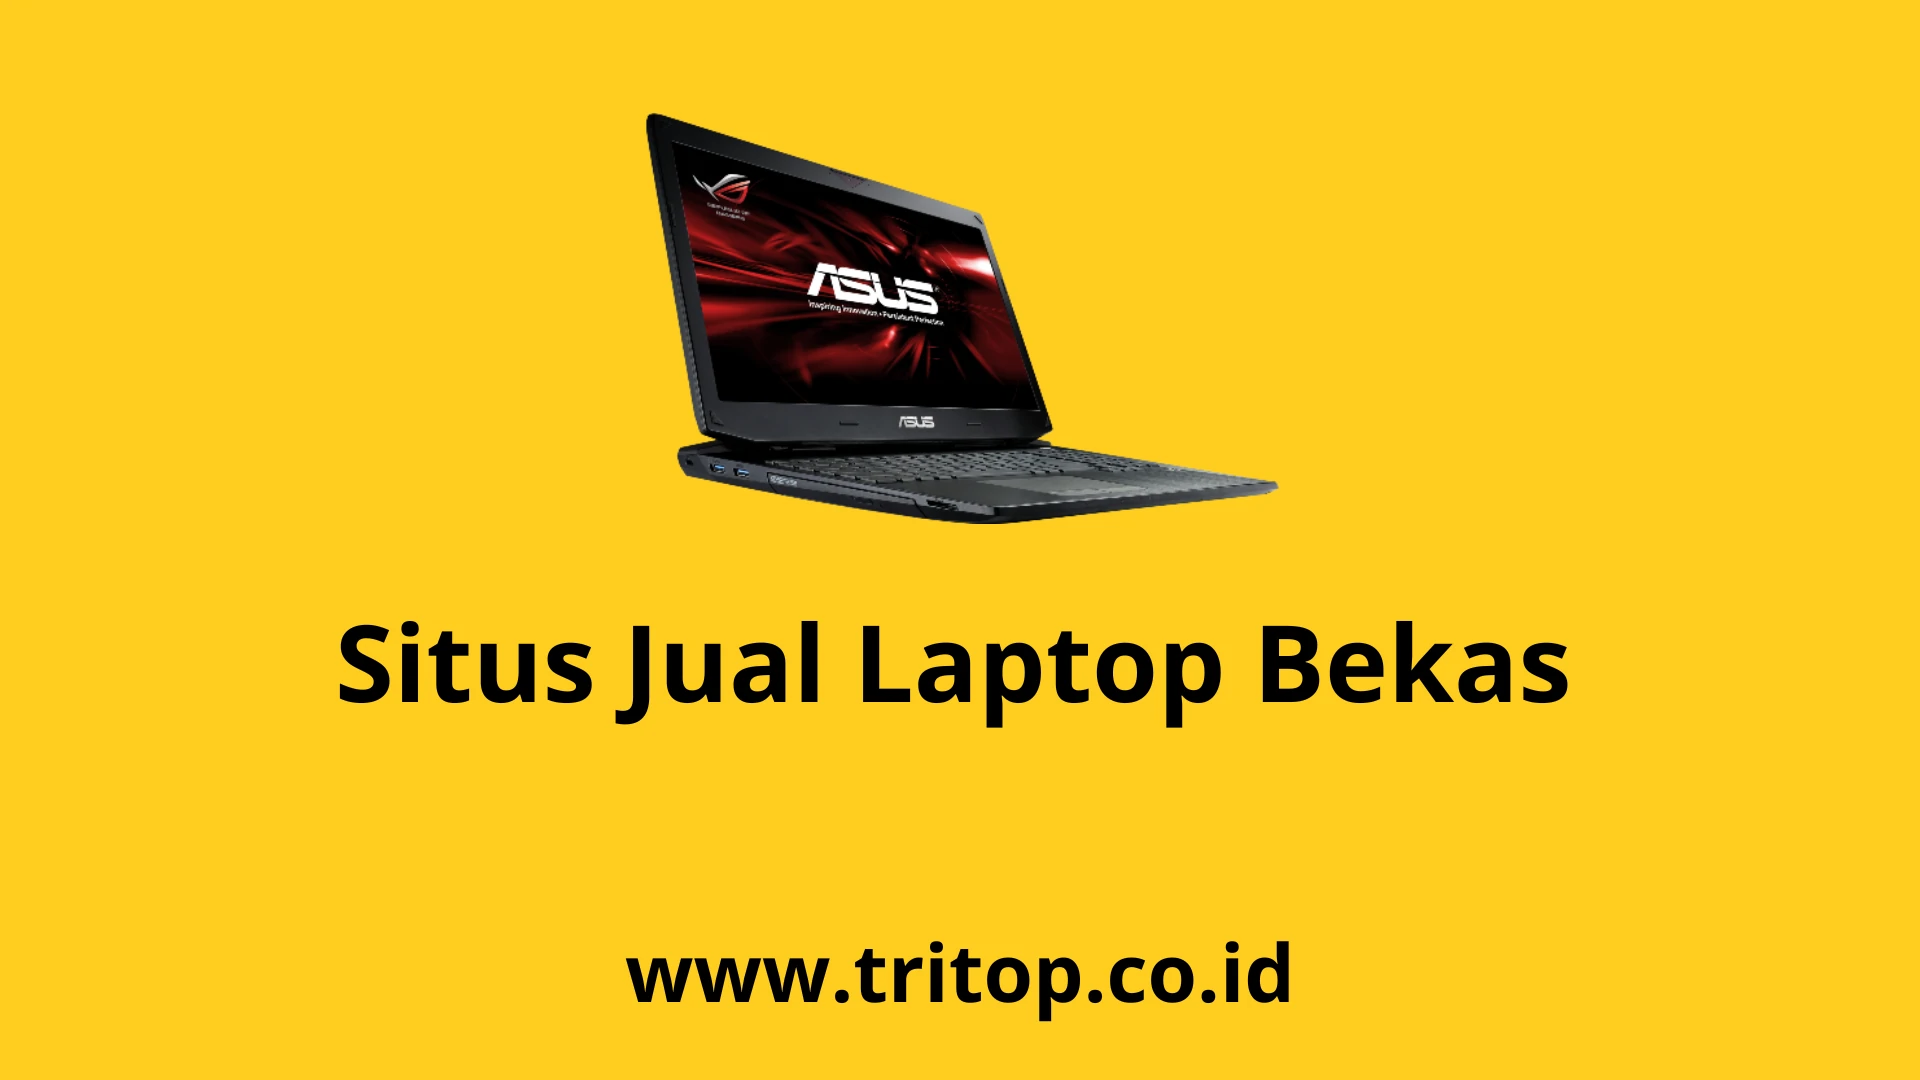 Situs Jual Laptop Bekas Tritop.co.id